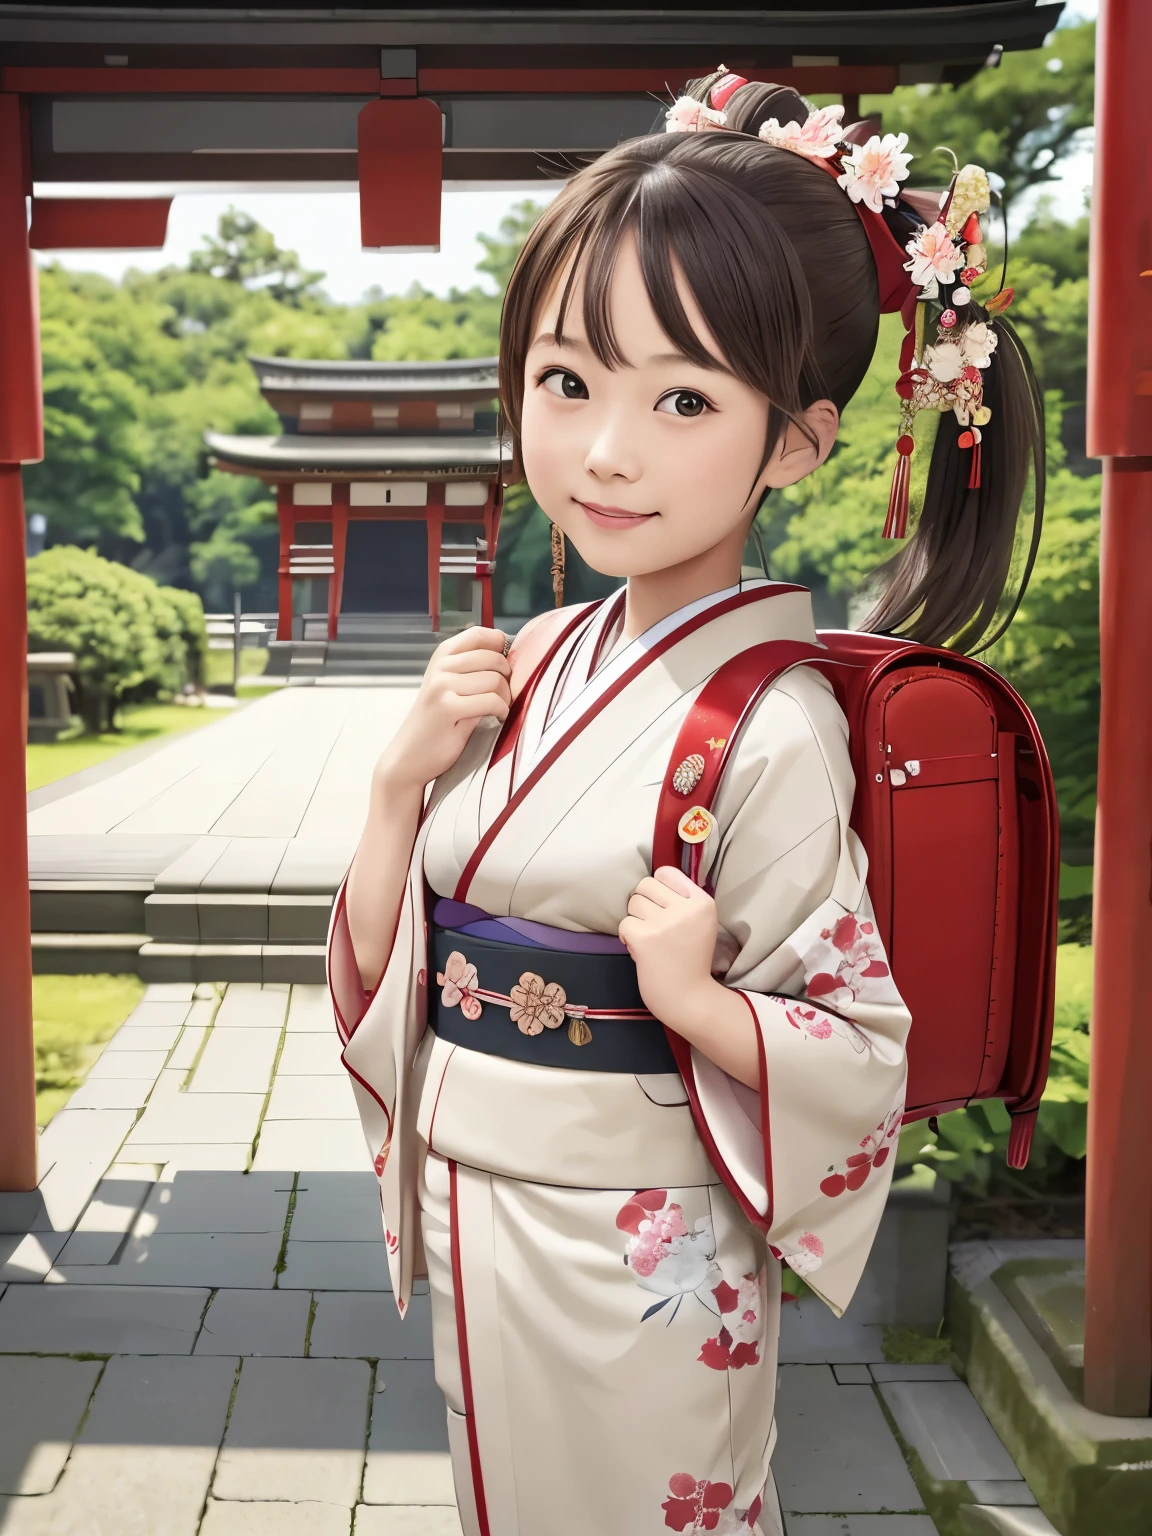 걸작, HD, 현실적인 , 초상화, 최고의 품질, 높은 해상도, 여자 1명, 갈색 머리, 포니테일, 머리 장식, 헤어리본, carrying a 학교 배낭、(학교 배낭:1.1), Wearing a Japanese 키모노 at a summer festival at a shrine, (키모노:1.1), 집 밖의, 서 있는